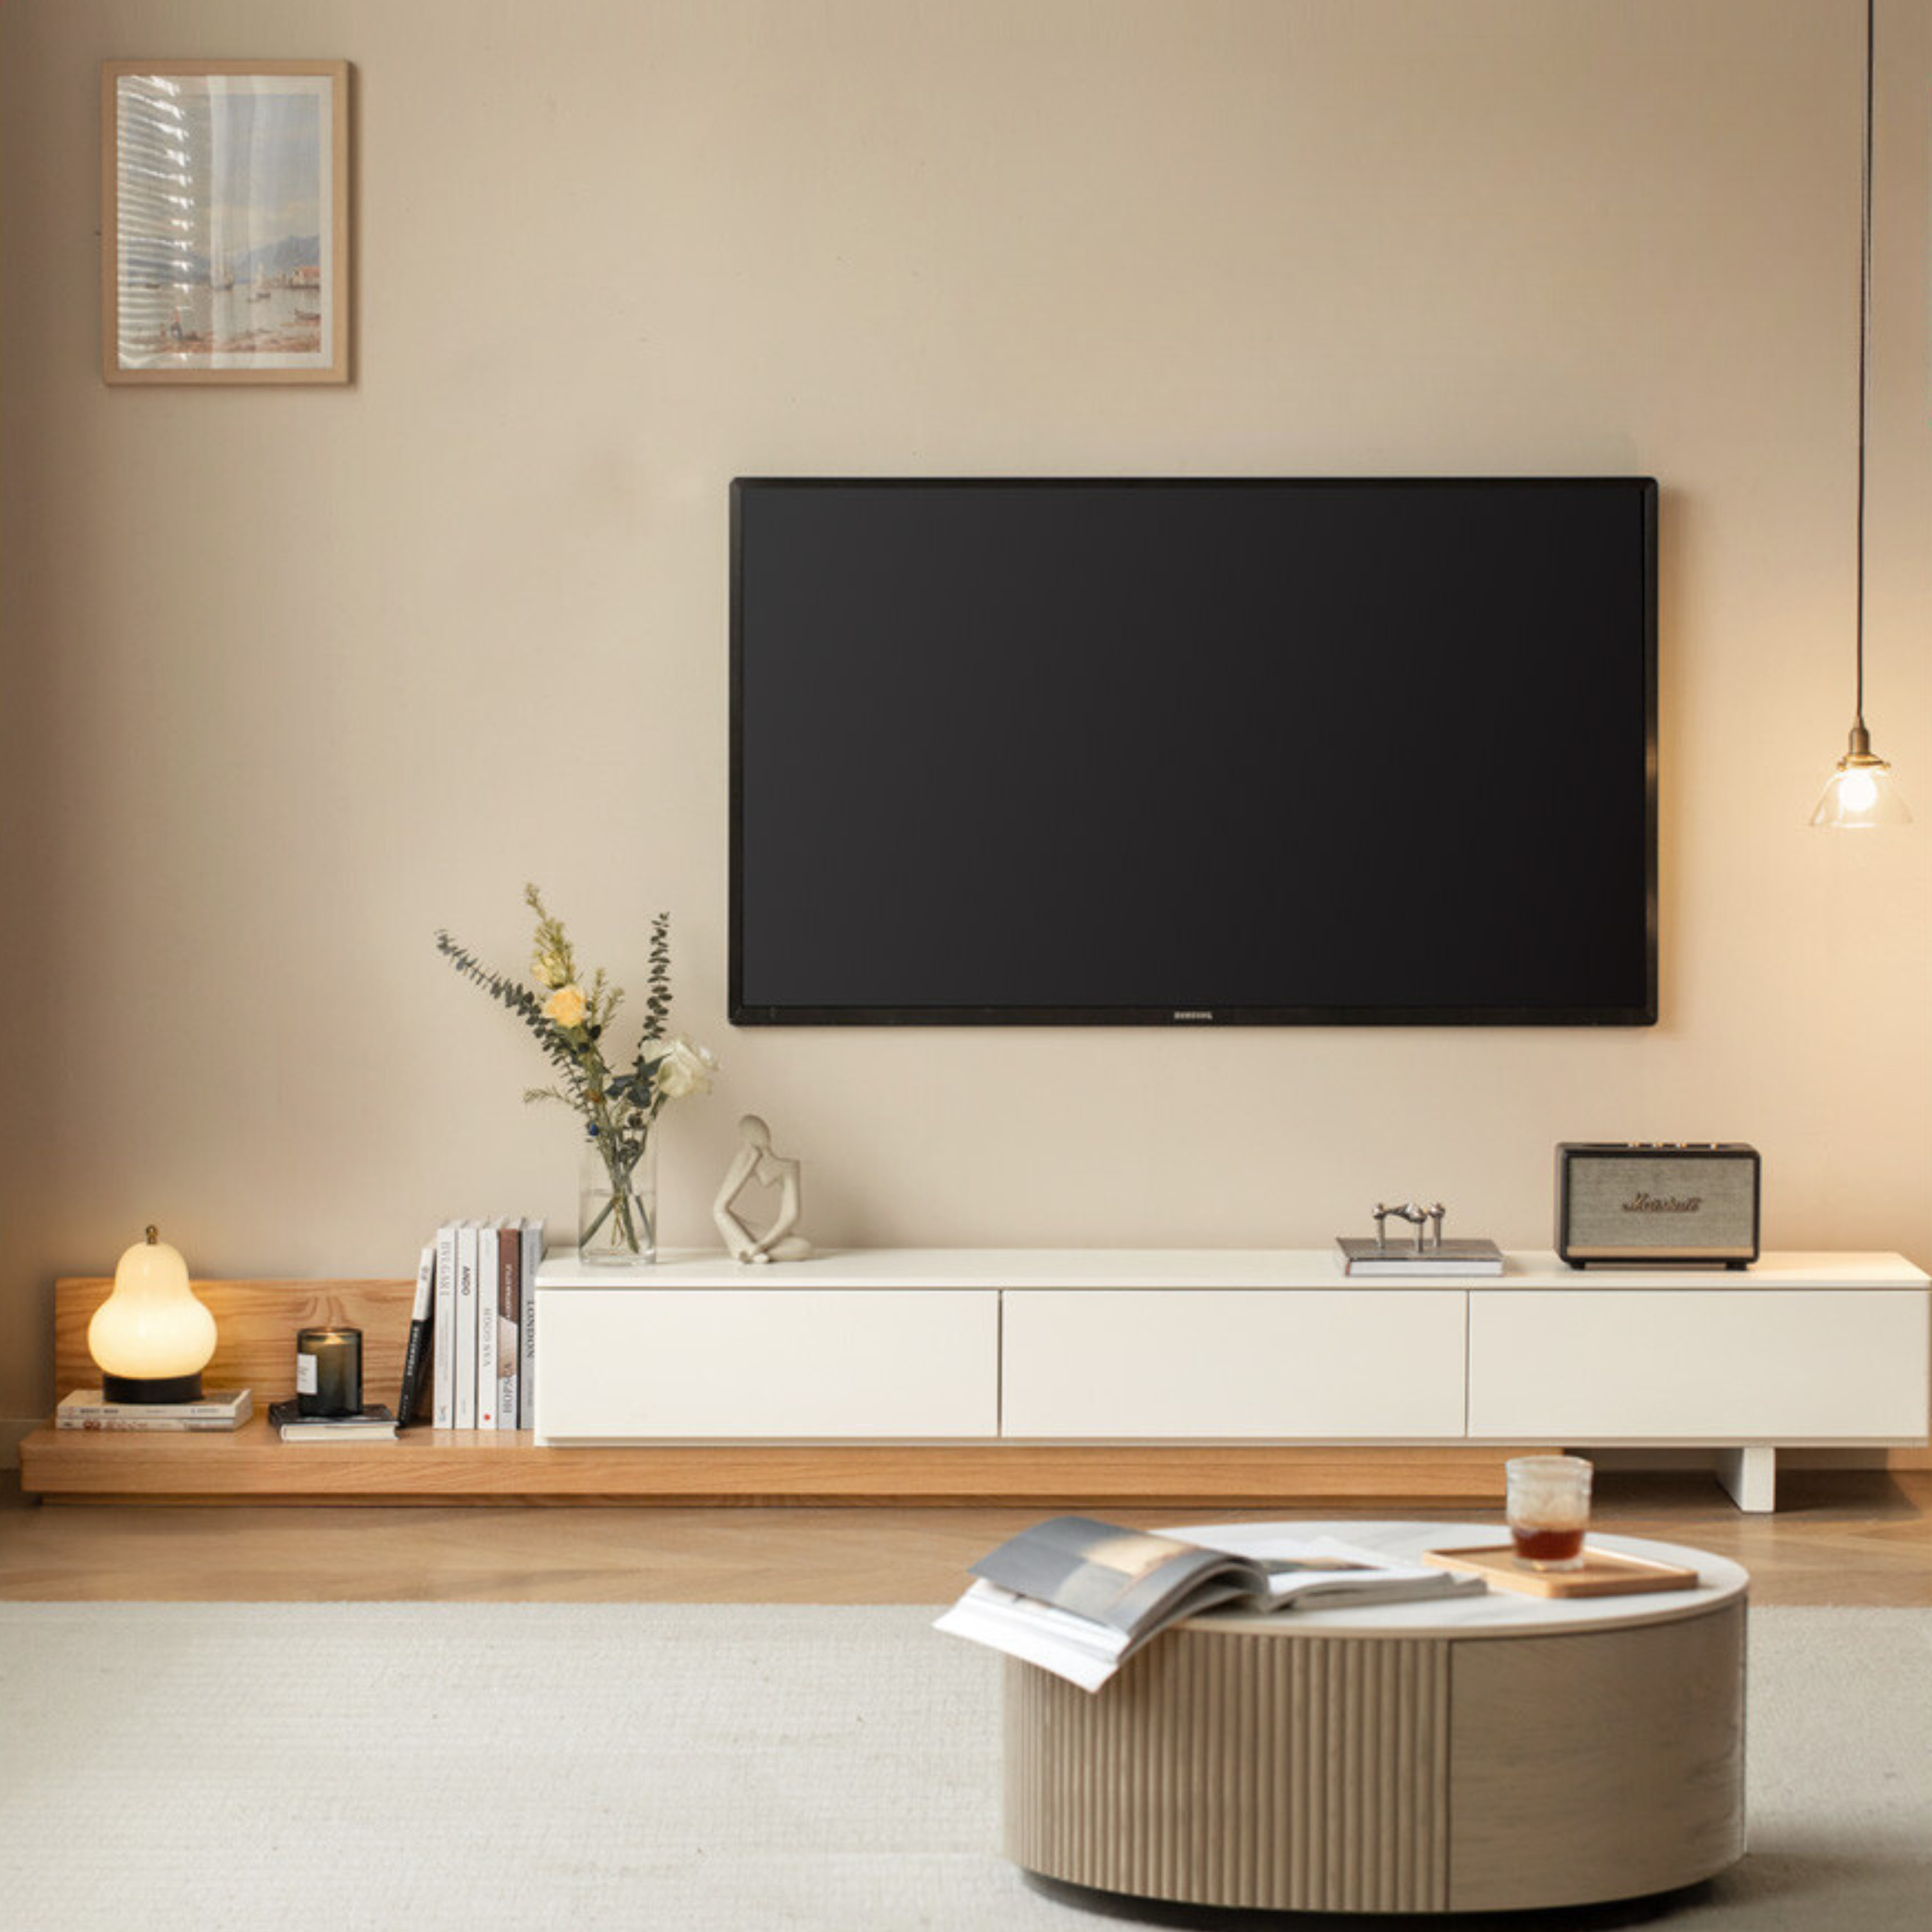 Oak- poplar solid wood retractable floor TV cabinet "